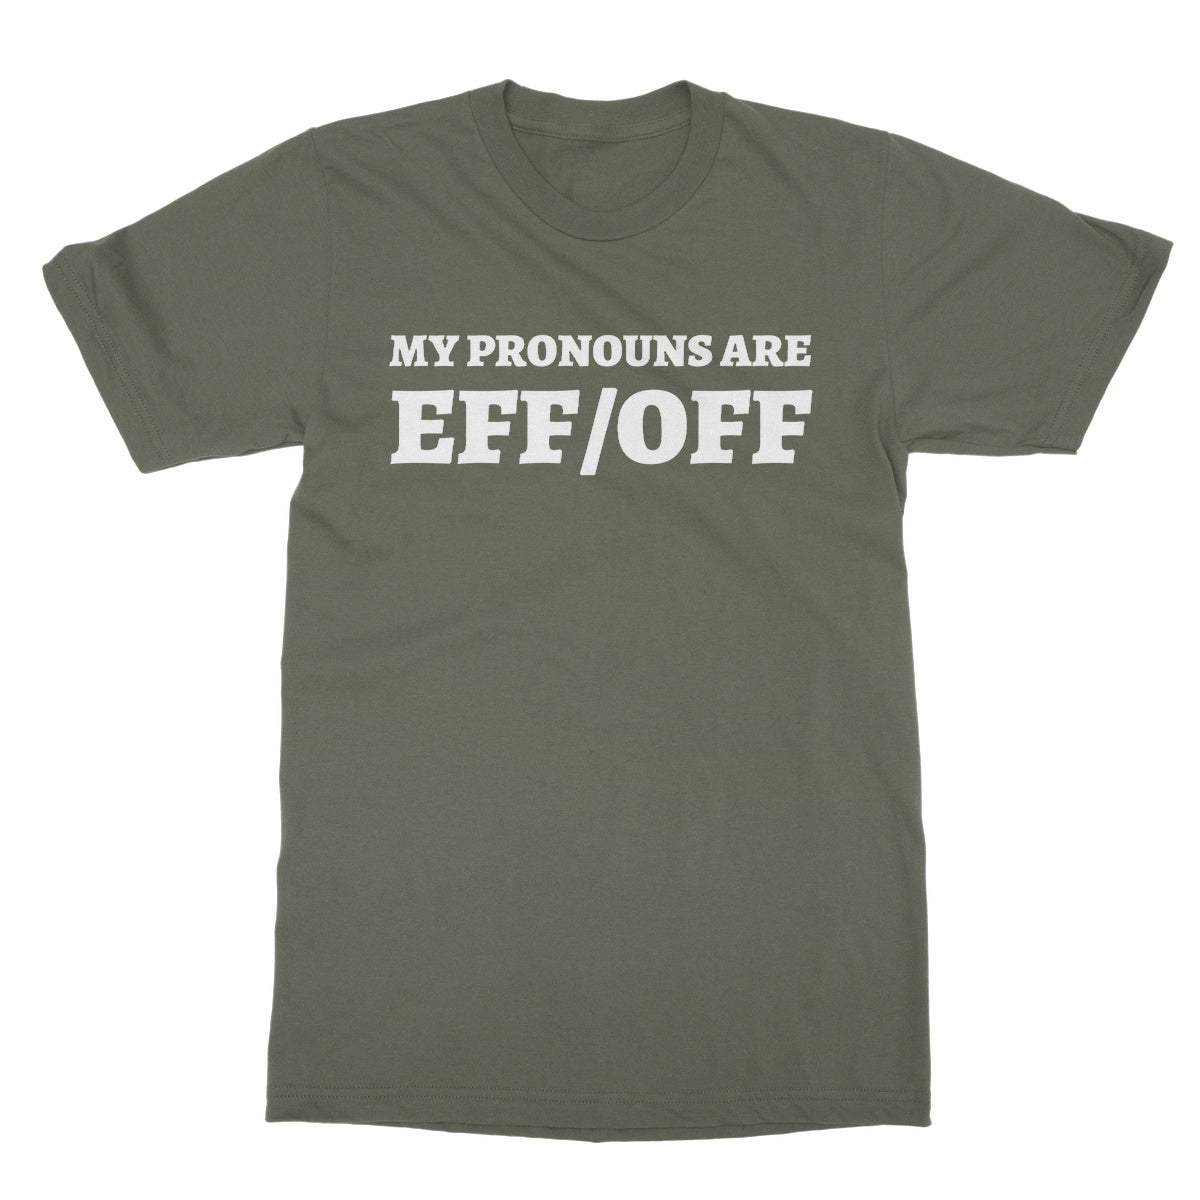 eff off t shirt green